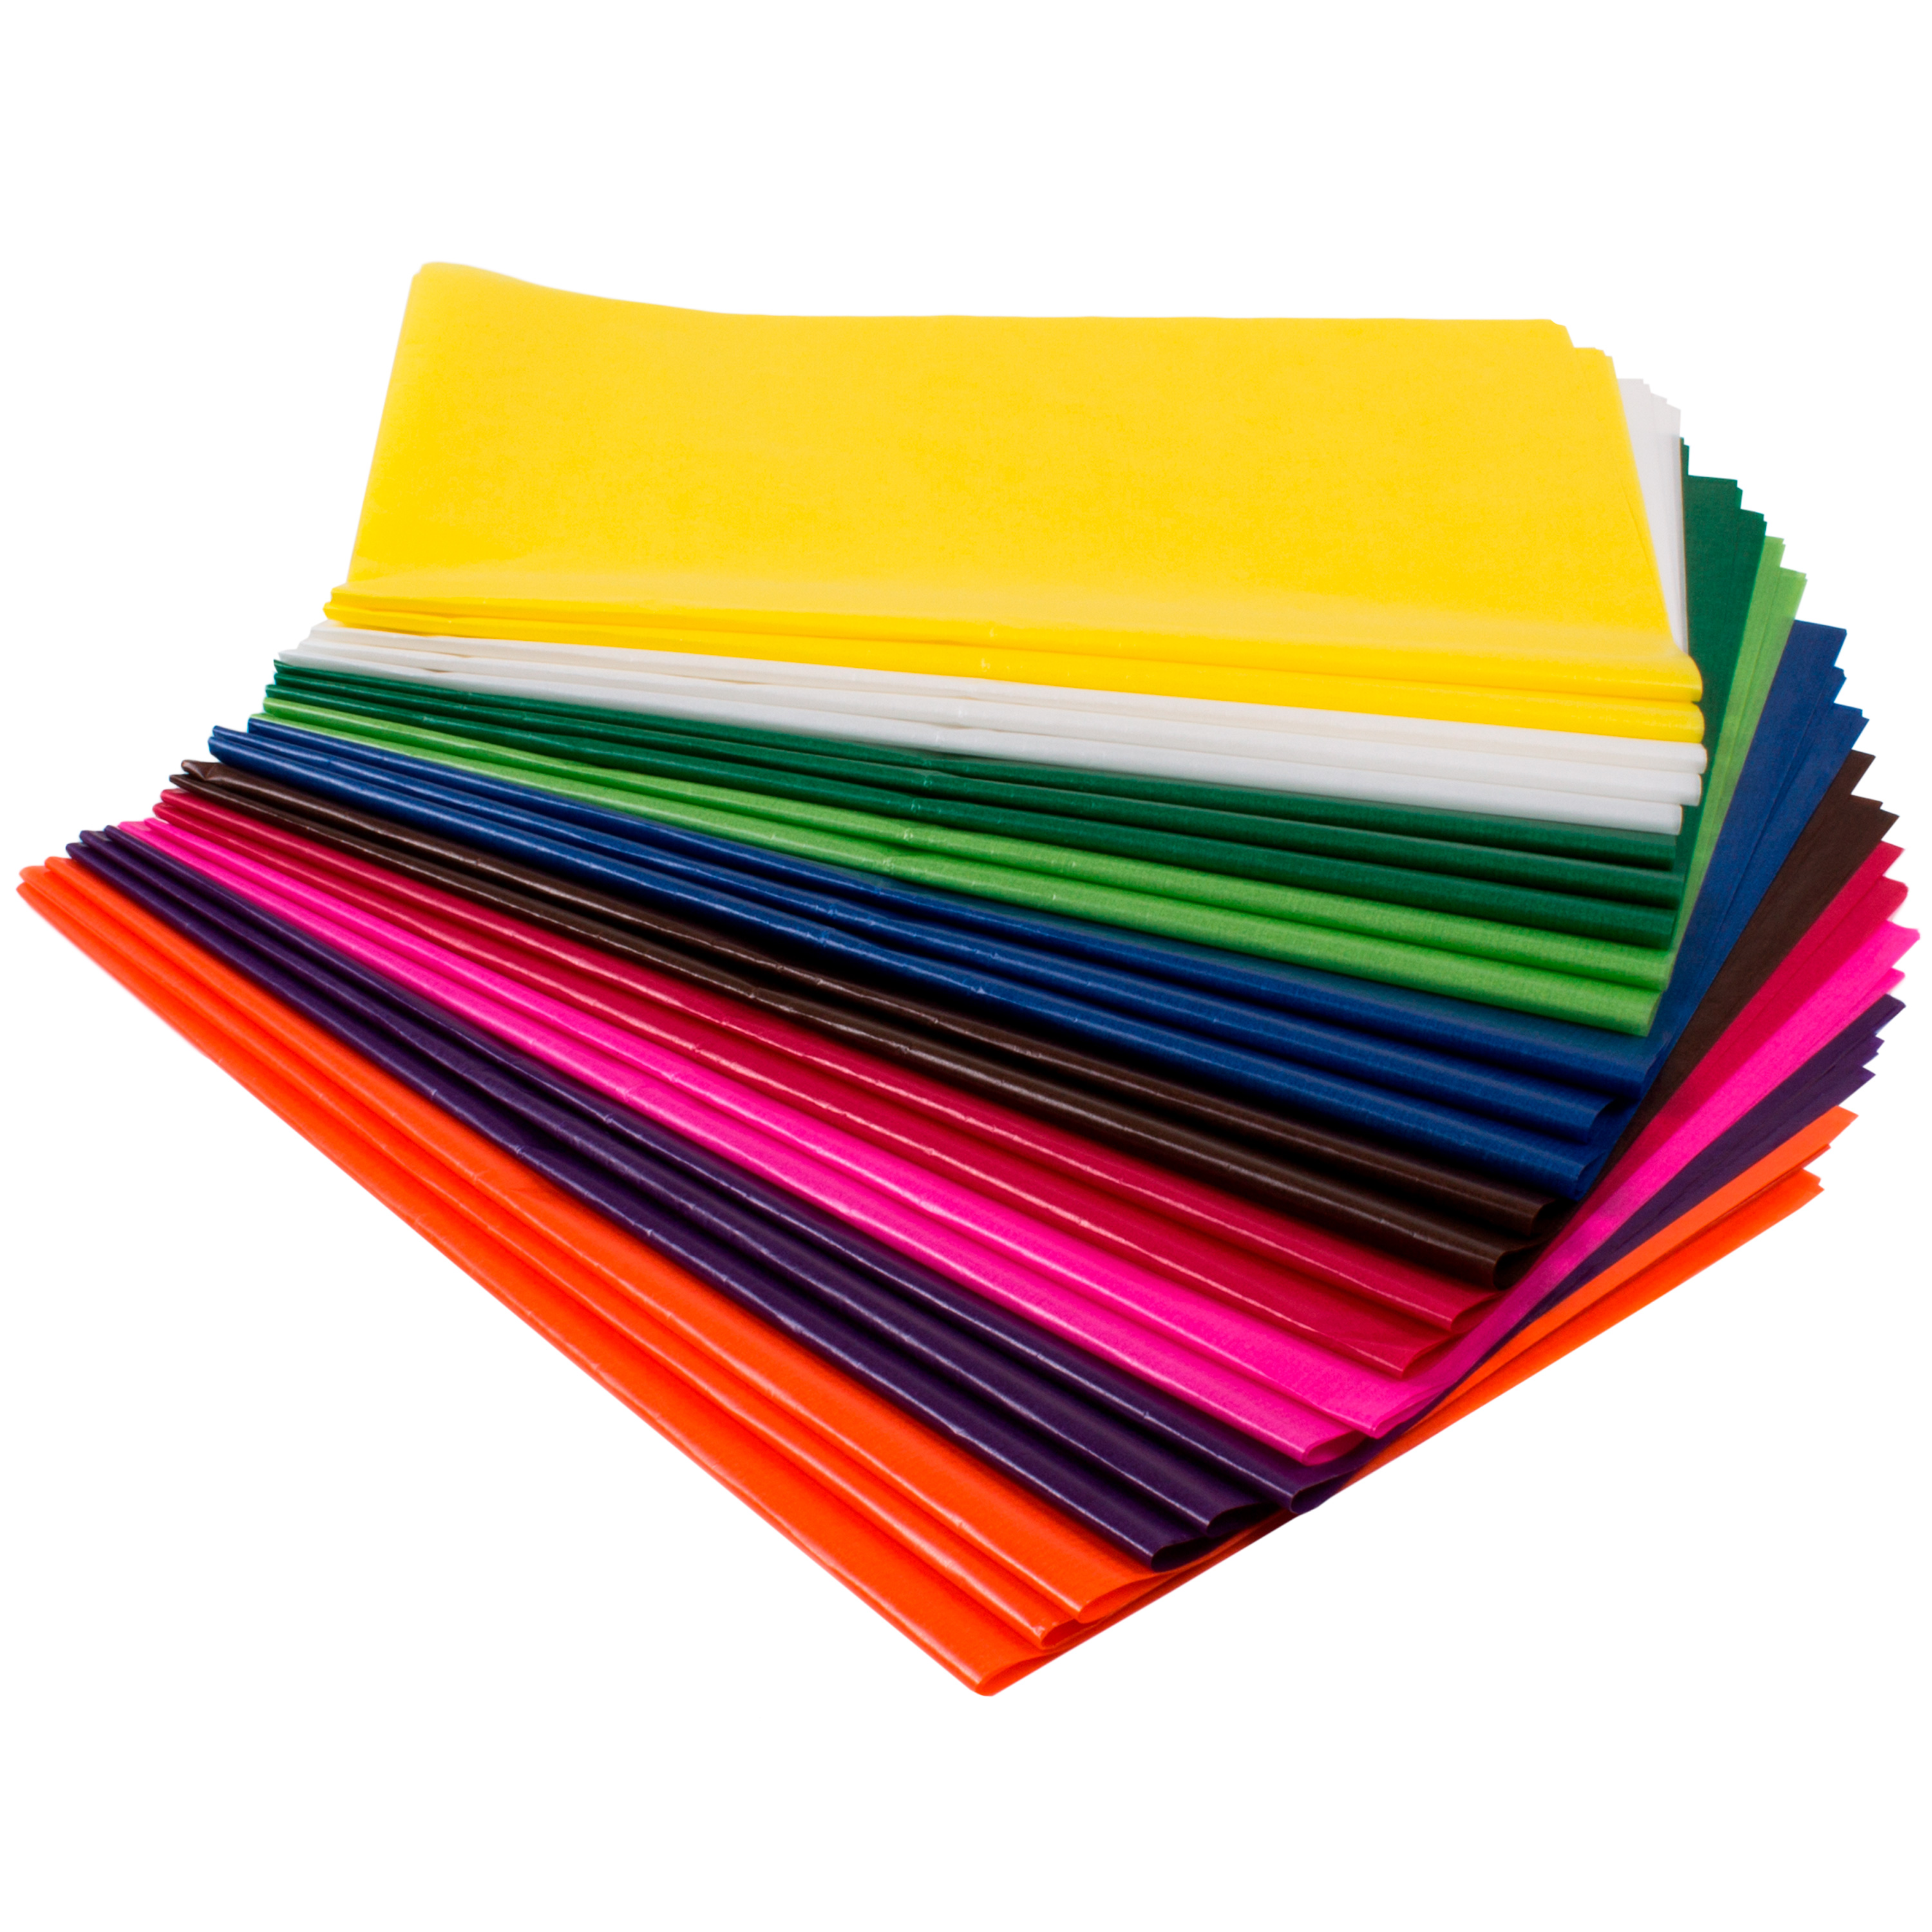 Transparentpapier farbig sortiert, 42 g/m², 25 Bögen